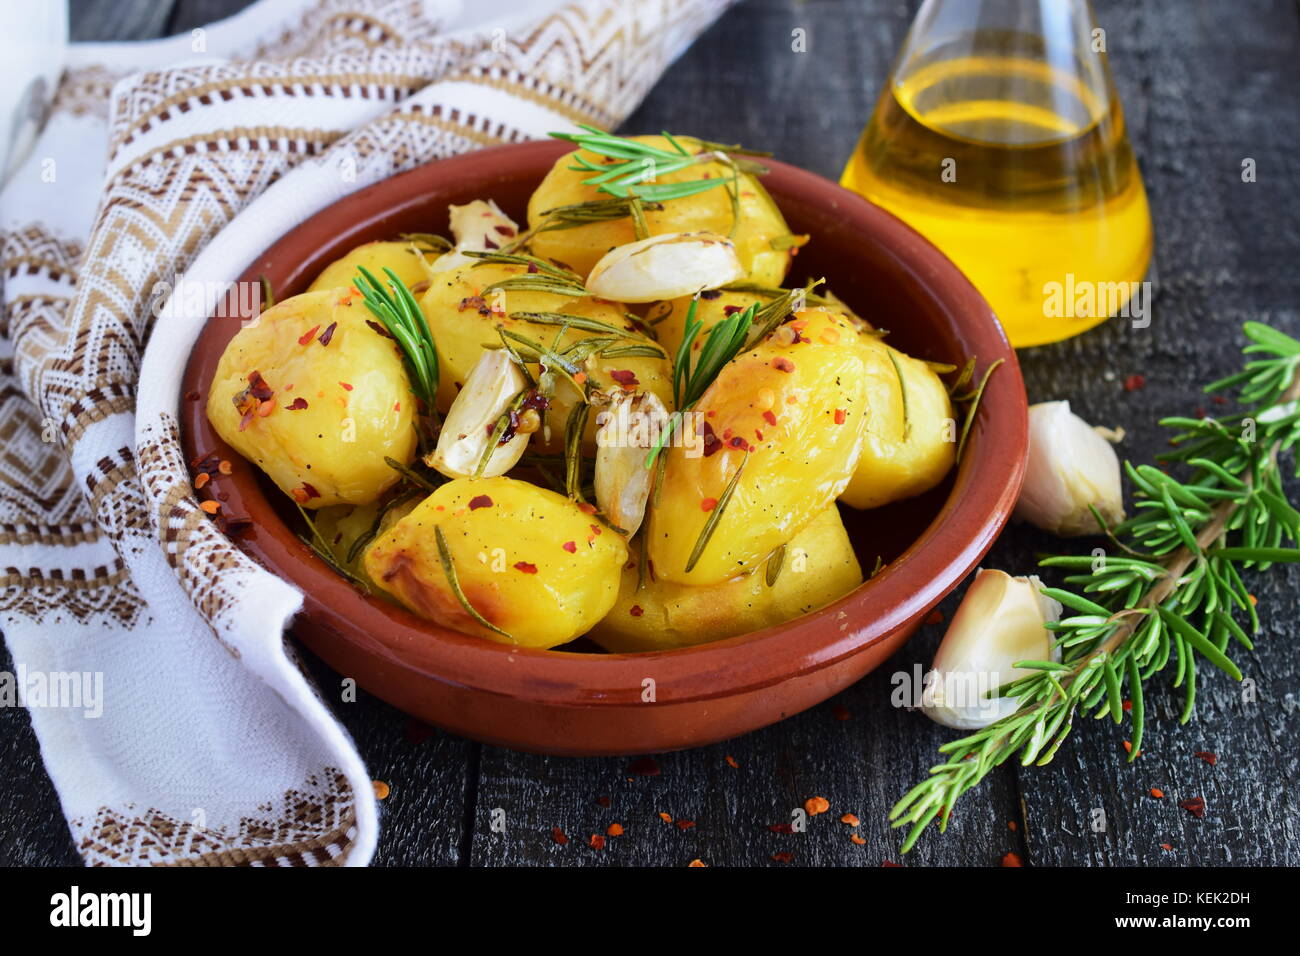 Pomme de terre cuite au four avec du romarin, ail, huile d'olive et mélanger les épices dans un bol en céramique traditionnelle. vie méditerranéen. concept de saine alimentation. Banque D'Images